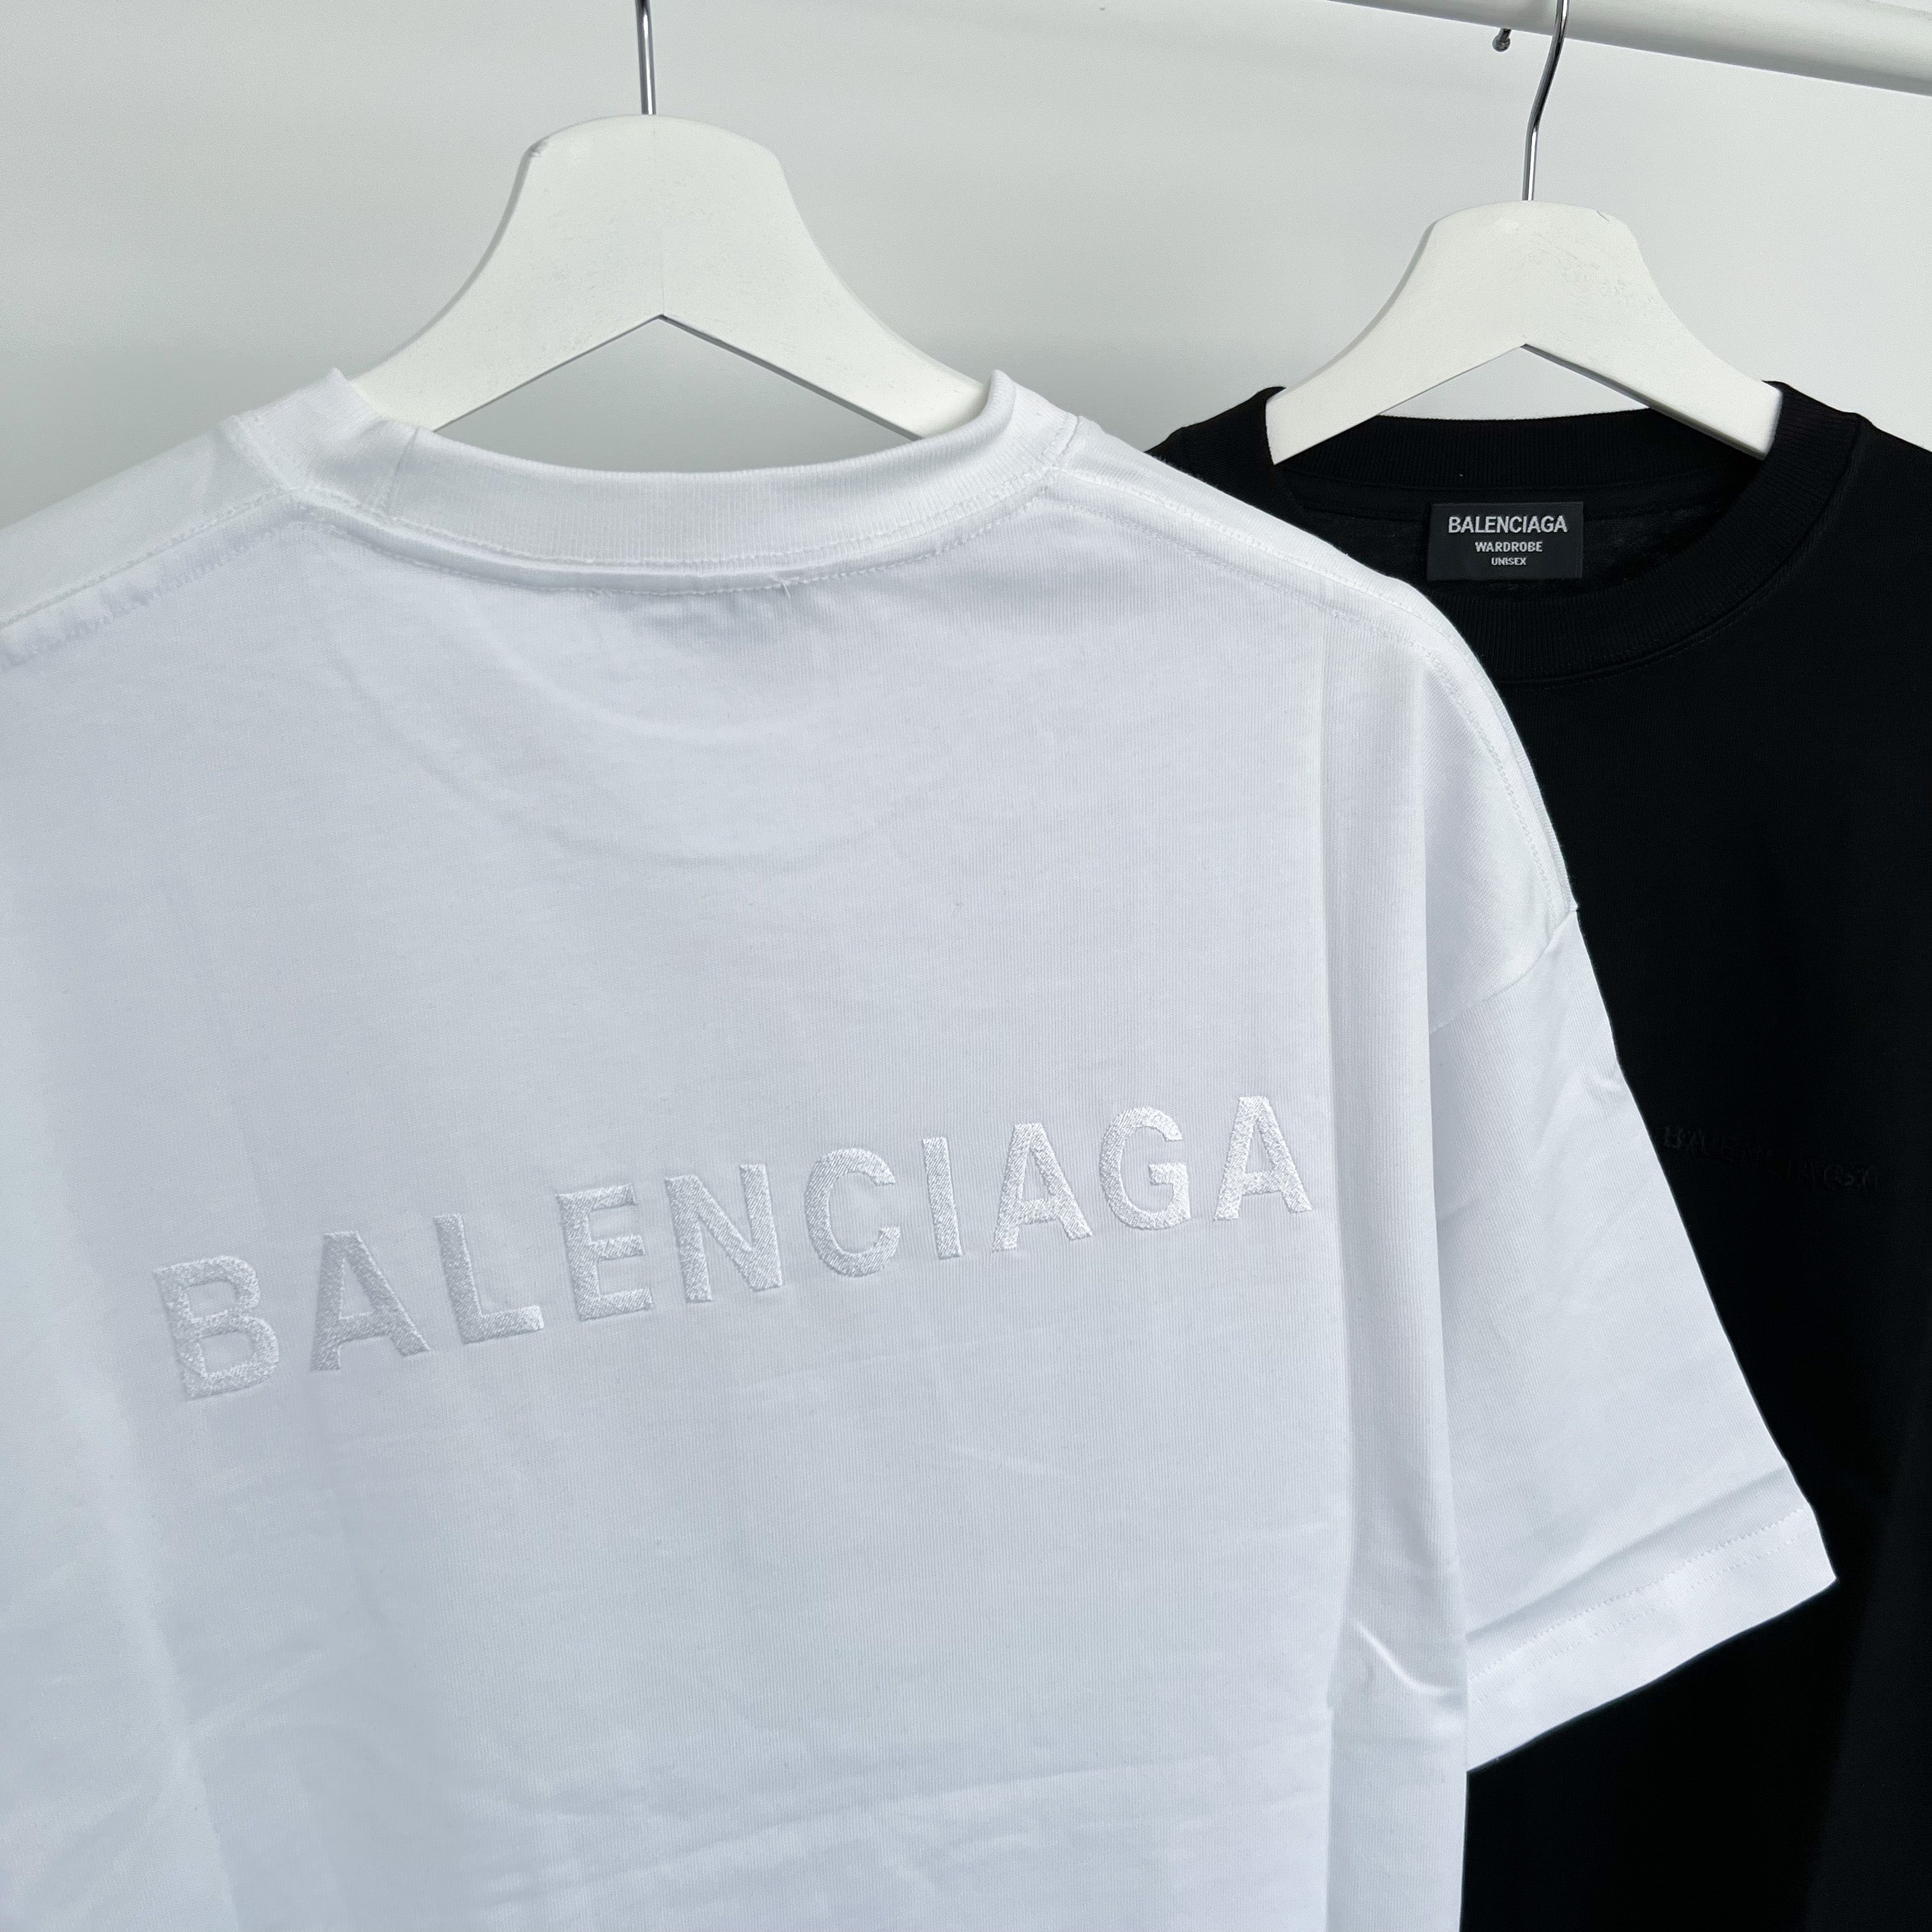 Balenciaga Embroidered Back Logo Tee - White